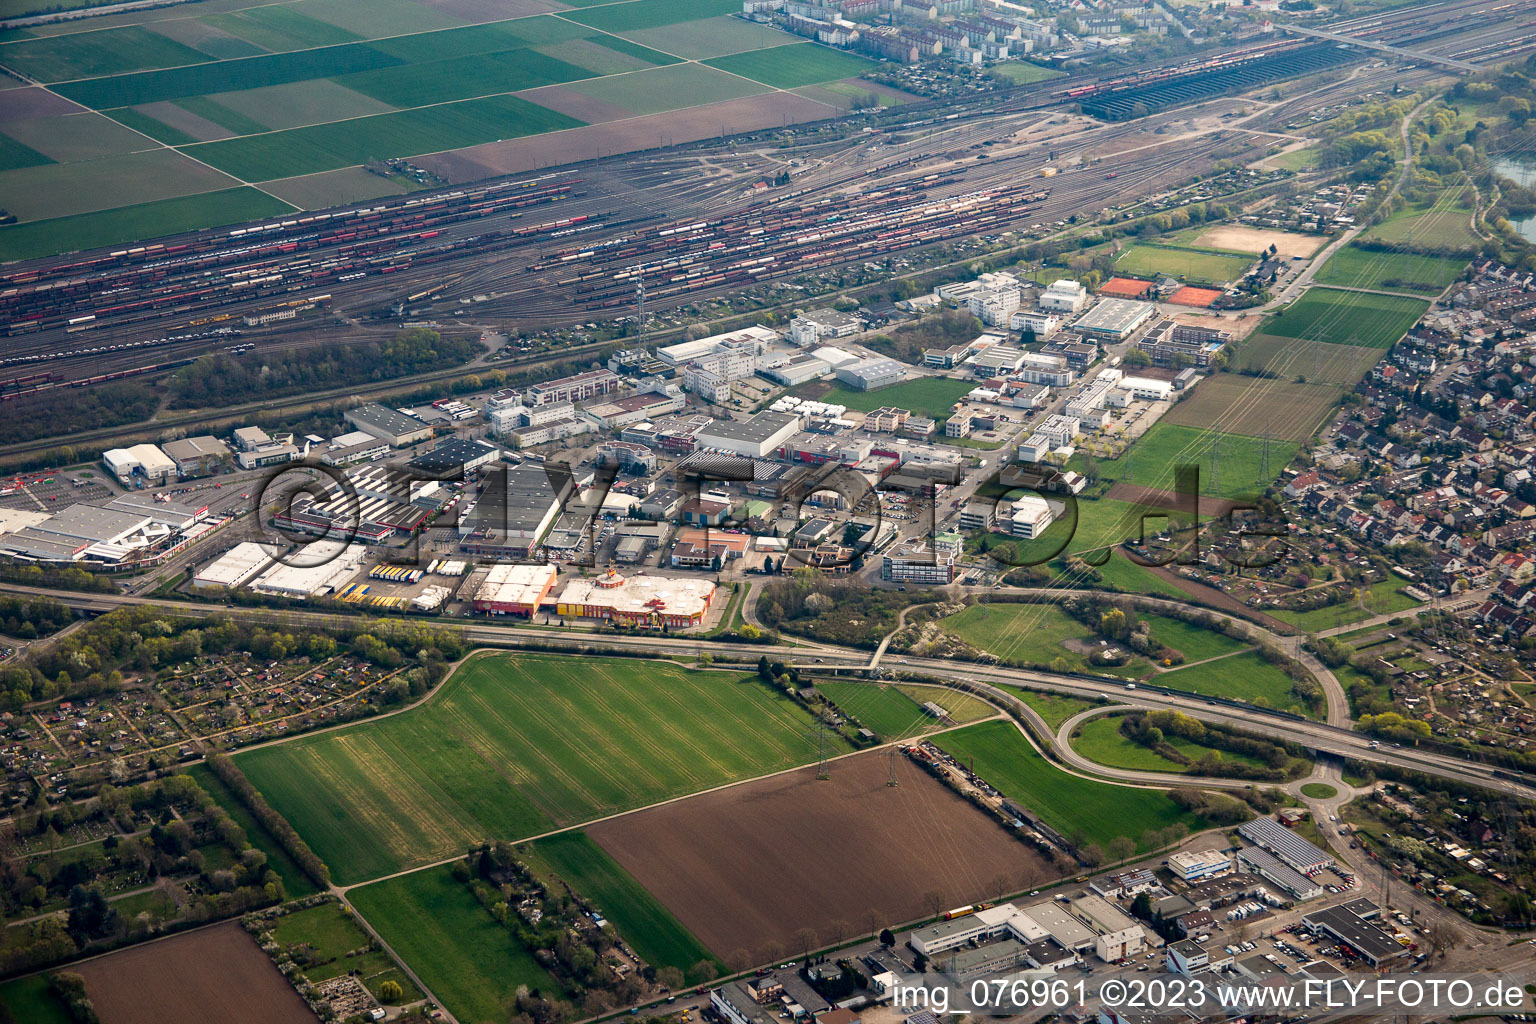 Vue aérienne de Zone industrielle Malaustr à le quartier Rheinau in Mannheim dans le département Bade-Wurtemberg, Allemagne